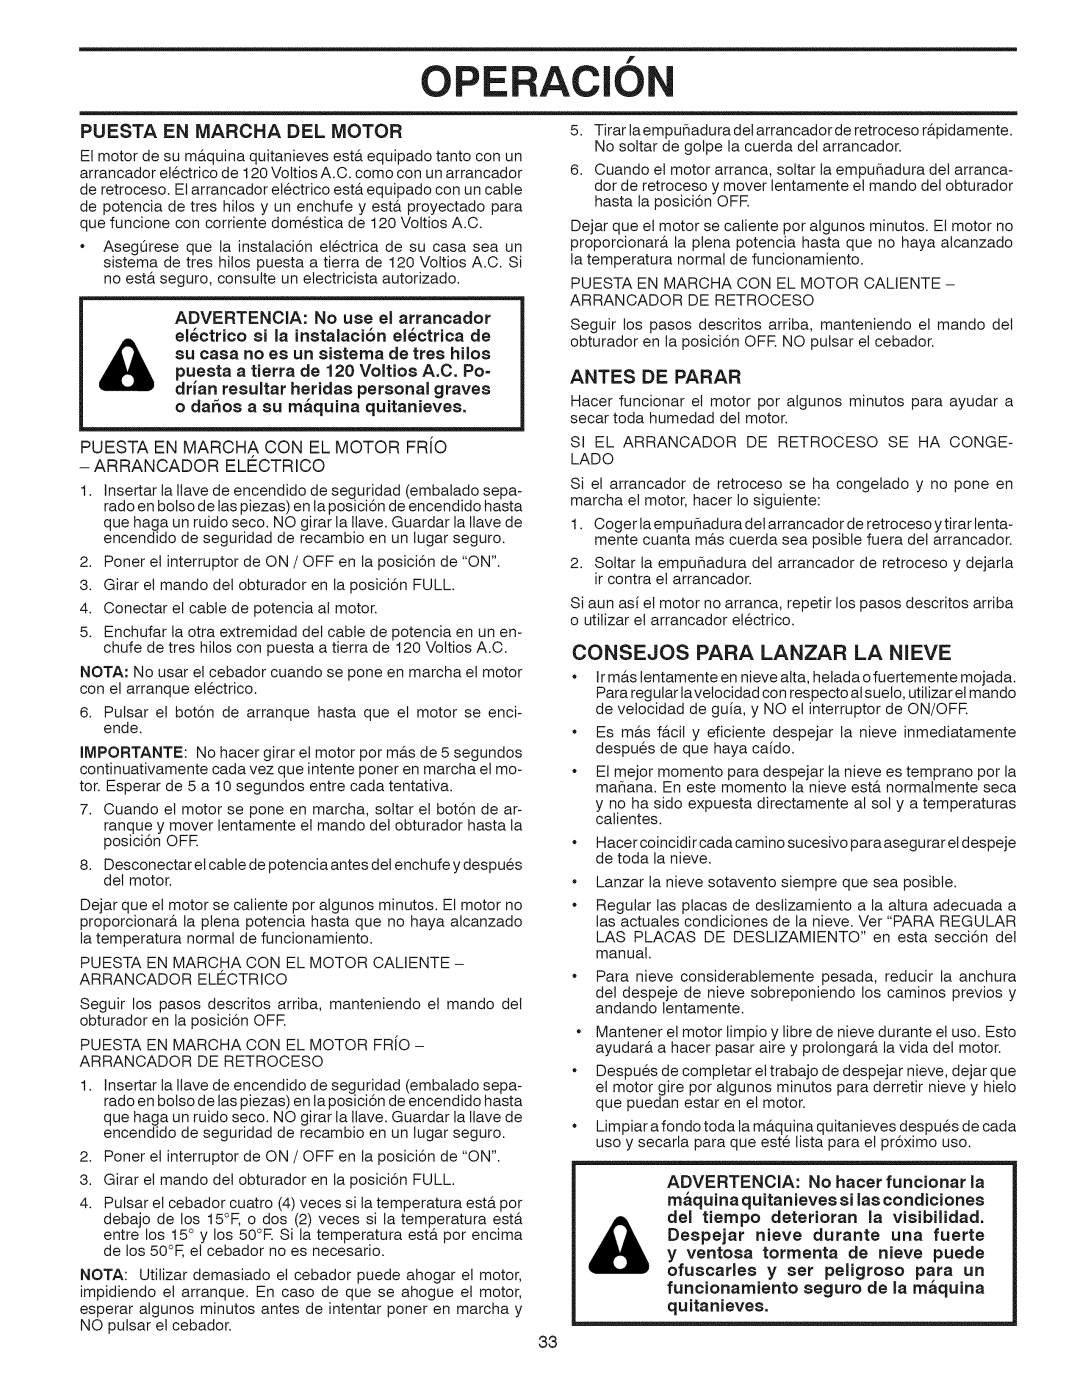 Craftsman 917.881064 owner manual Operac, Consejos Para Lanzar La Nieve, Puesta En Iviarcha Del Motor, Antes De Parar 